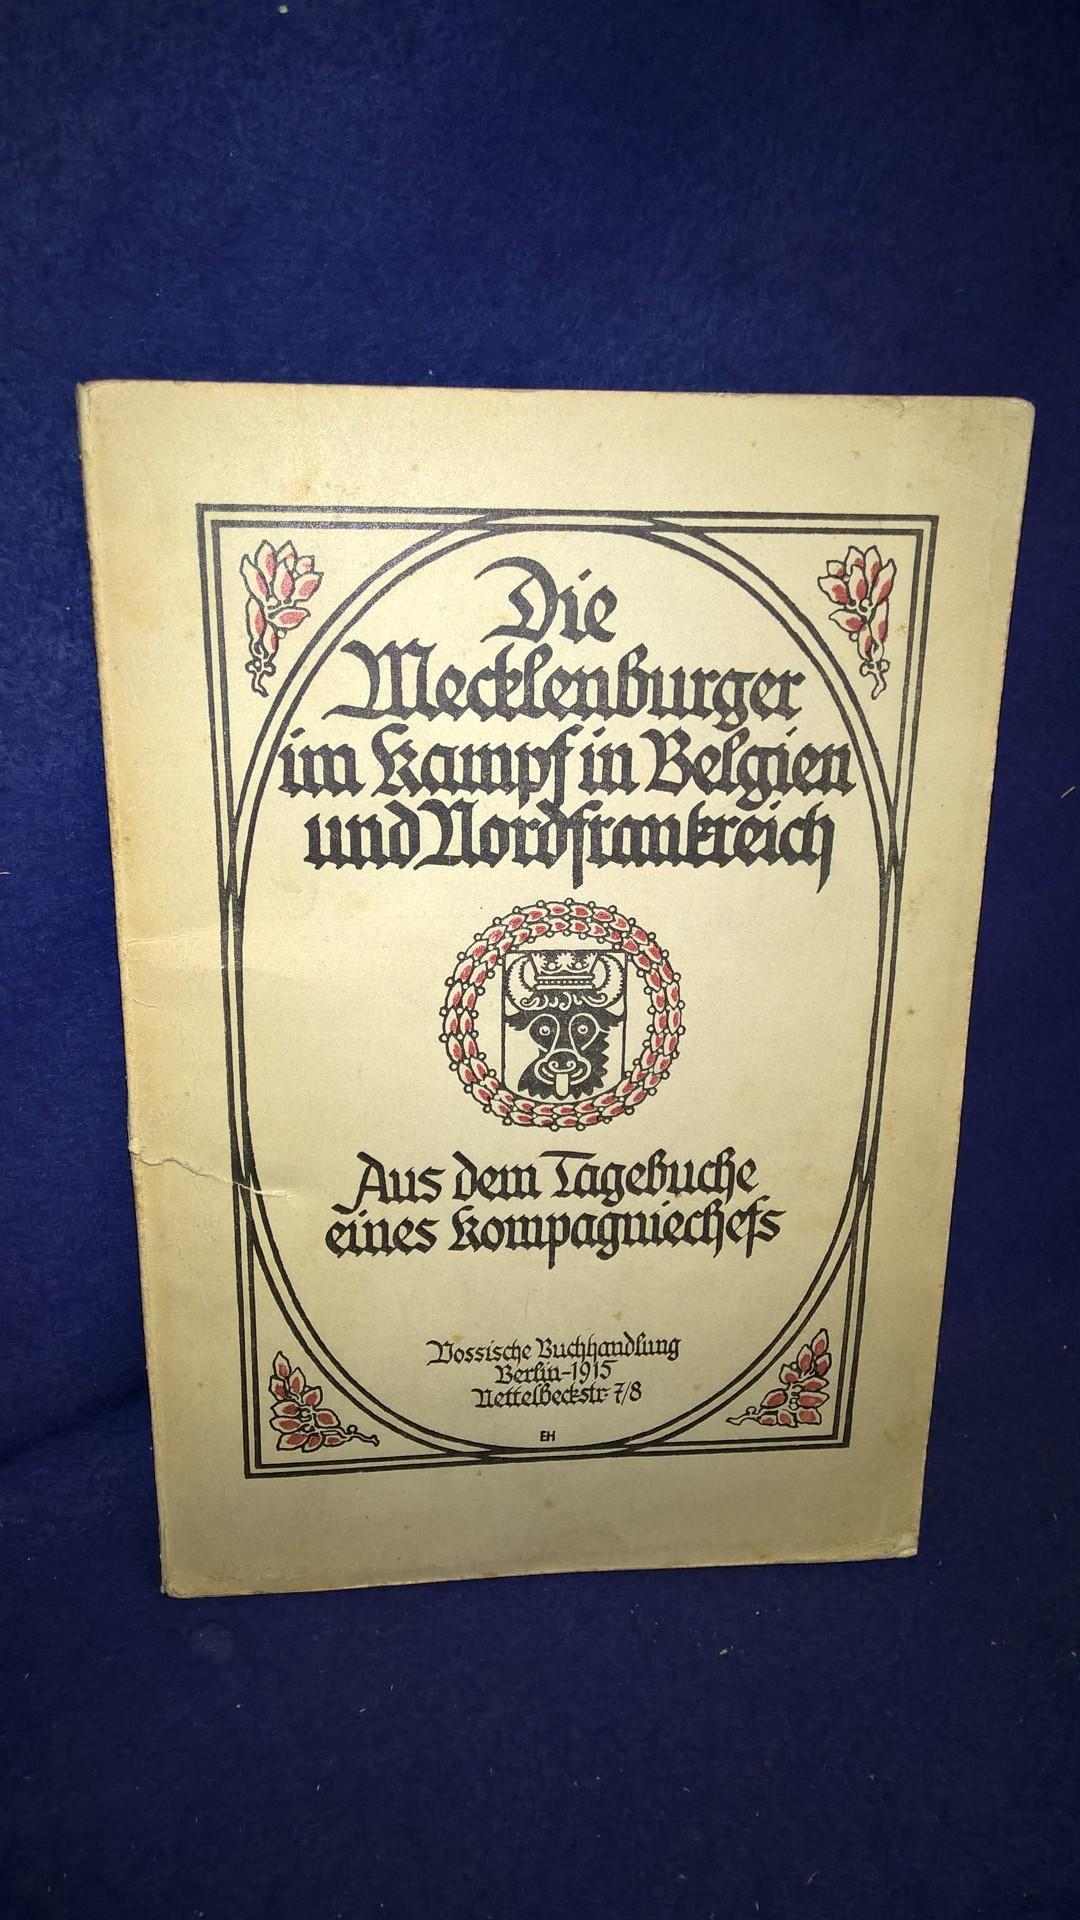 Die Mecklenburger im Kampf in Belgien und Nordfrankreich. Aus dem Tagebuche eines Kompagniechefs.( wohl Großherzoglich Mecklenburgisches Füsilier-Regiment Kaiser Wilhelm Nr.90).